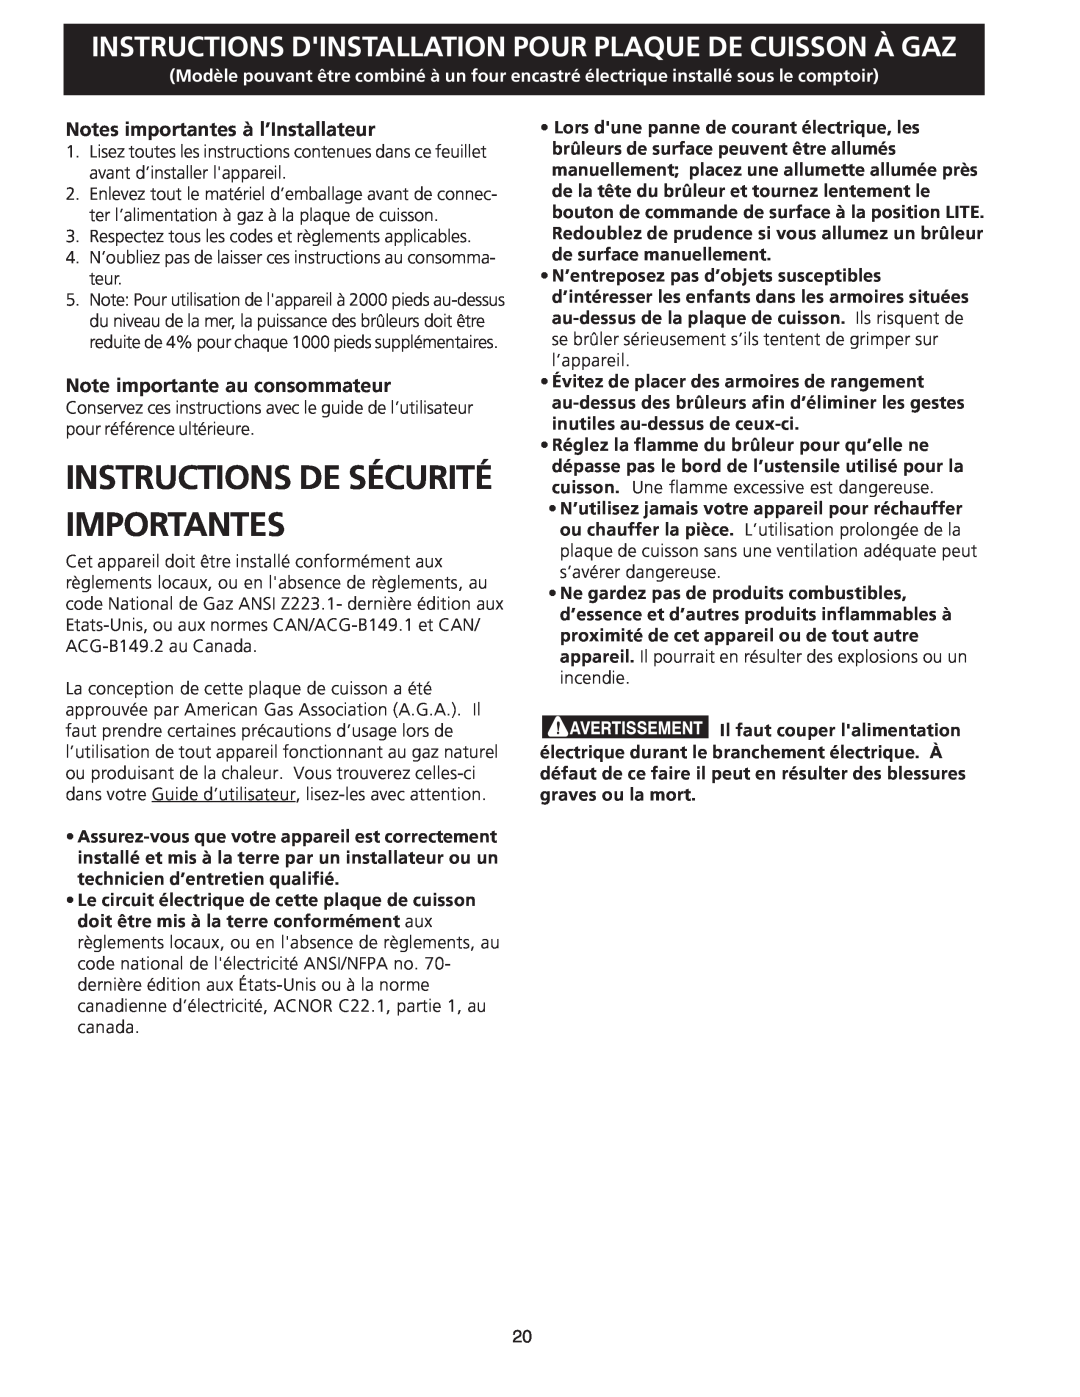 Frigidaire FGC36S5EC Instructions De Sécurité Importantes, Instructions Dinstallation Pour Plaque De Cuisson À Gaz 